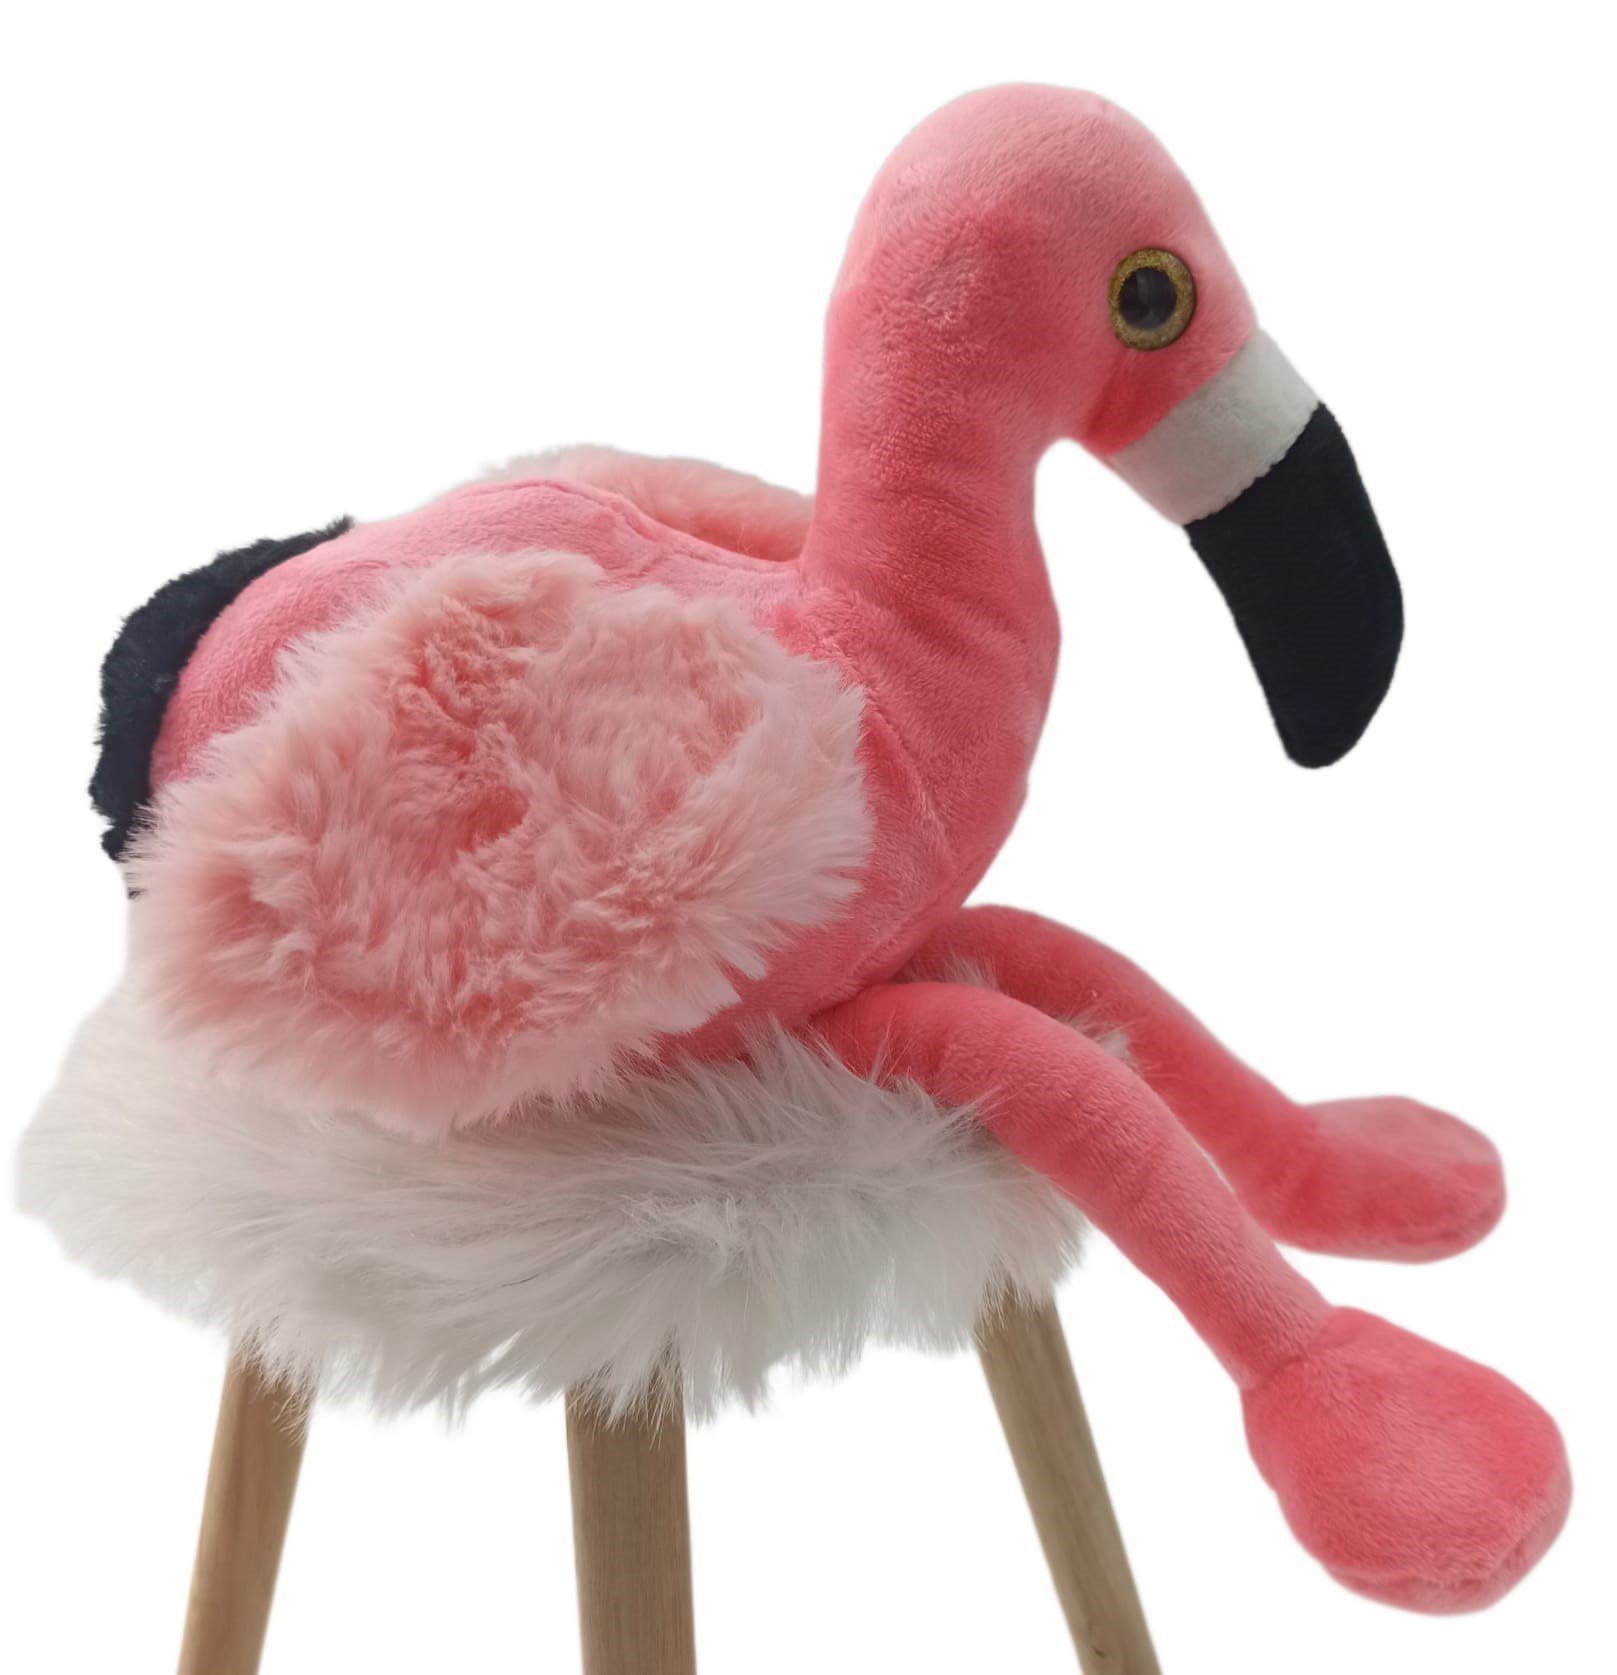 soma Kuscheltier Kuscheltier Flamingo pink 38 cm Plüschtier XXL Plüsch  Flamingo pi, Super weicher Plüsch Stofftier Kuscheltier für Kinder zum  spielen